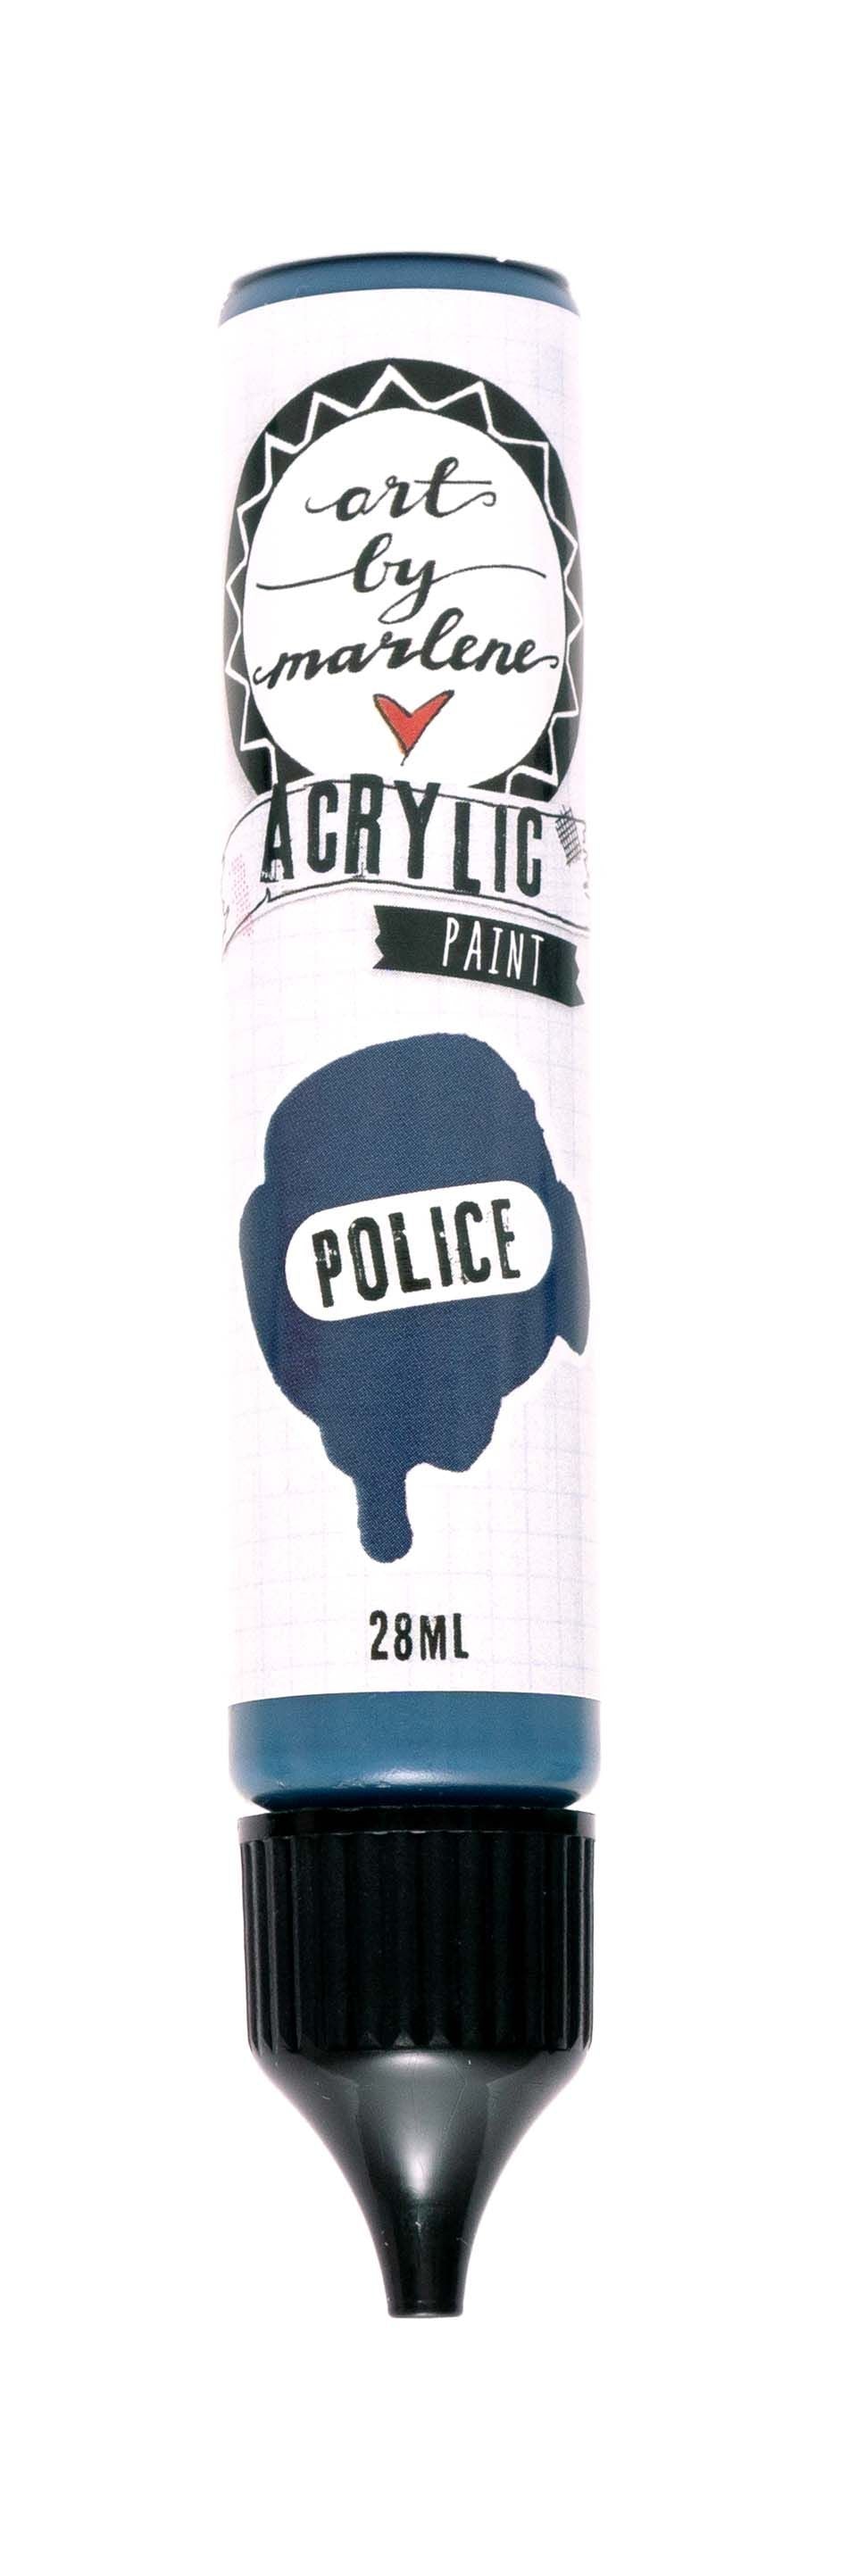 Art By Marlene - Acrylic Paint -Police  28Ml